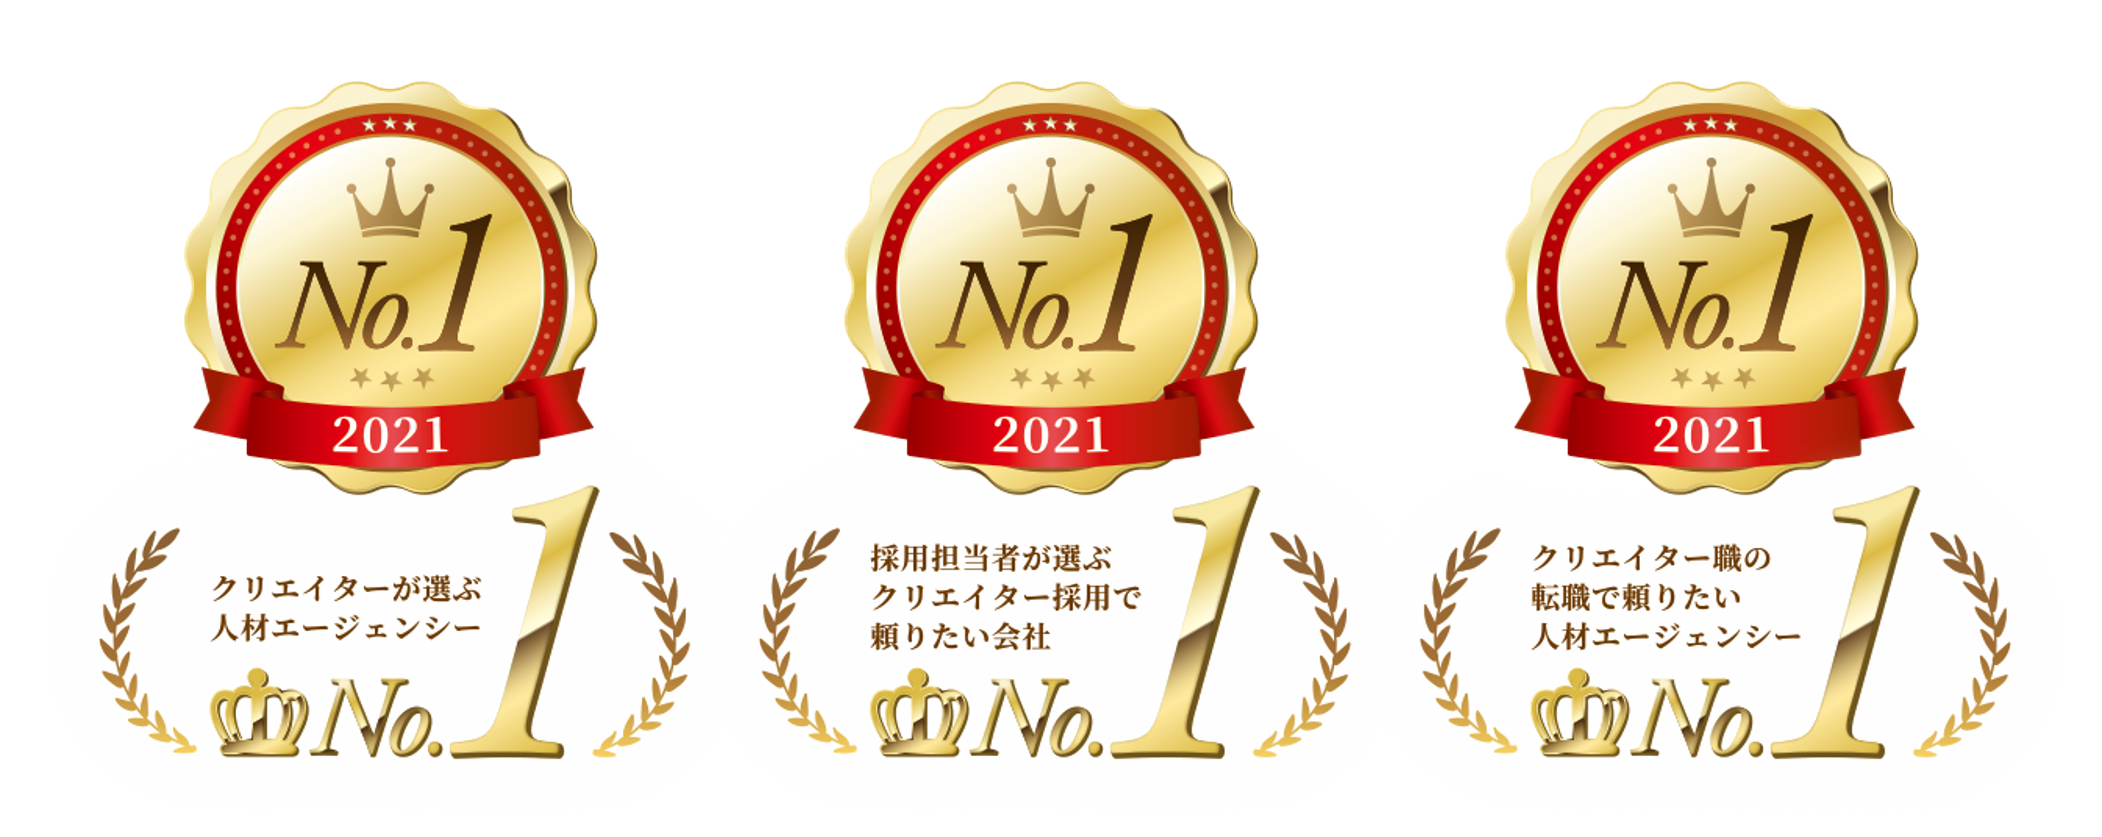 No1_logo.png